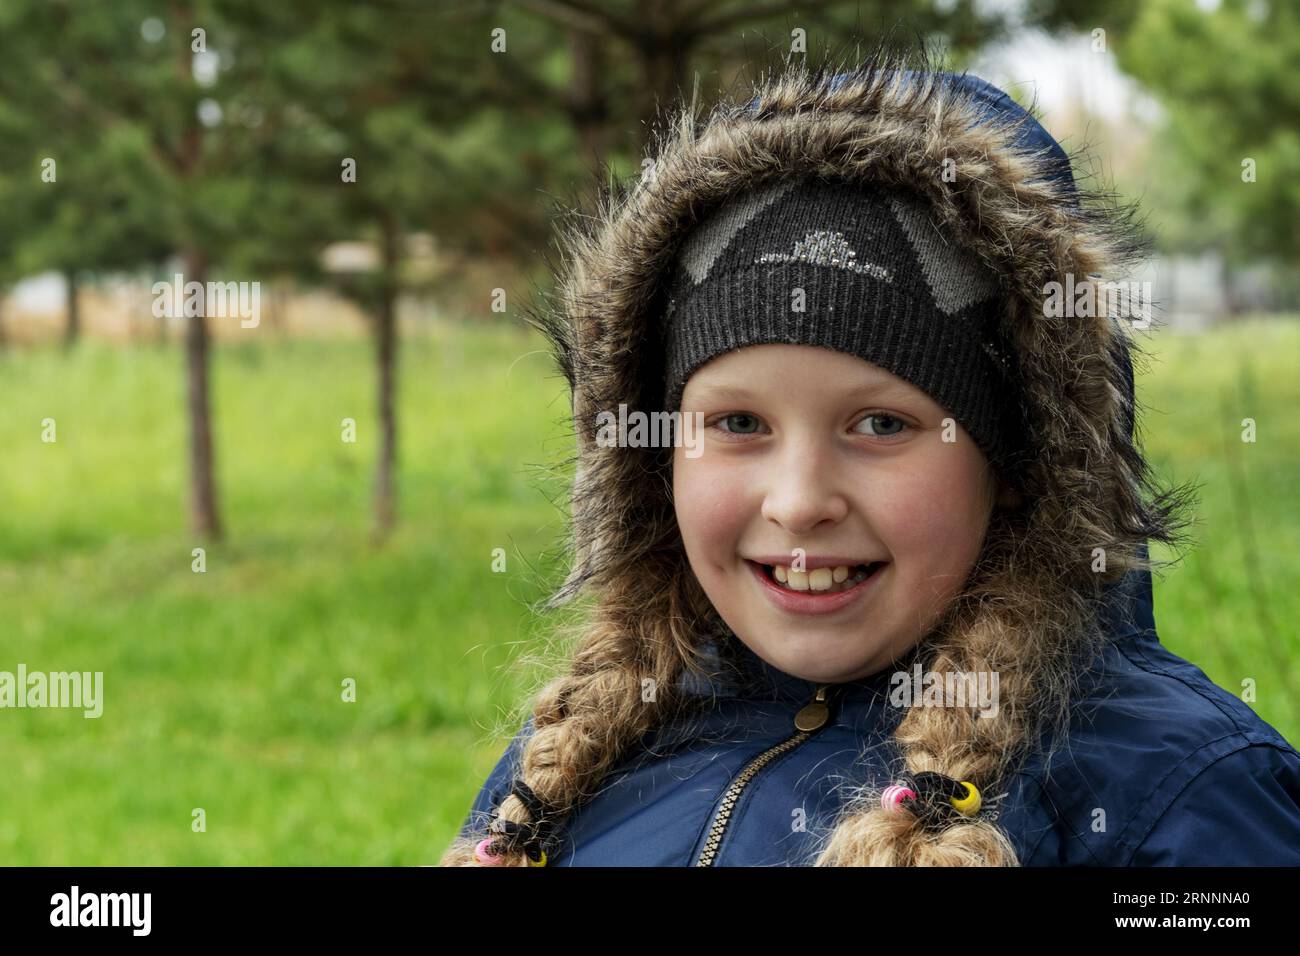 Ein Teenager in einer warmen Jacke. Warm gekleidetes Mädchen mit Hut und Zöpfen. Porträt eines schönen Mädchens im Spätherbst, frühen Frühling Stockfoto